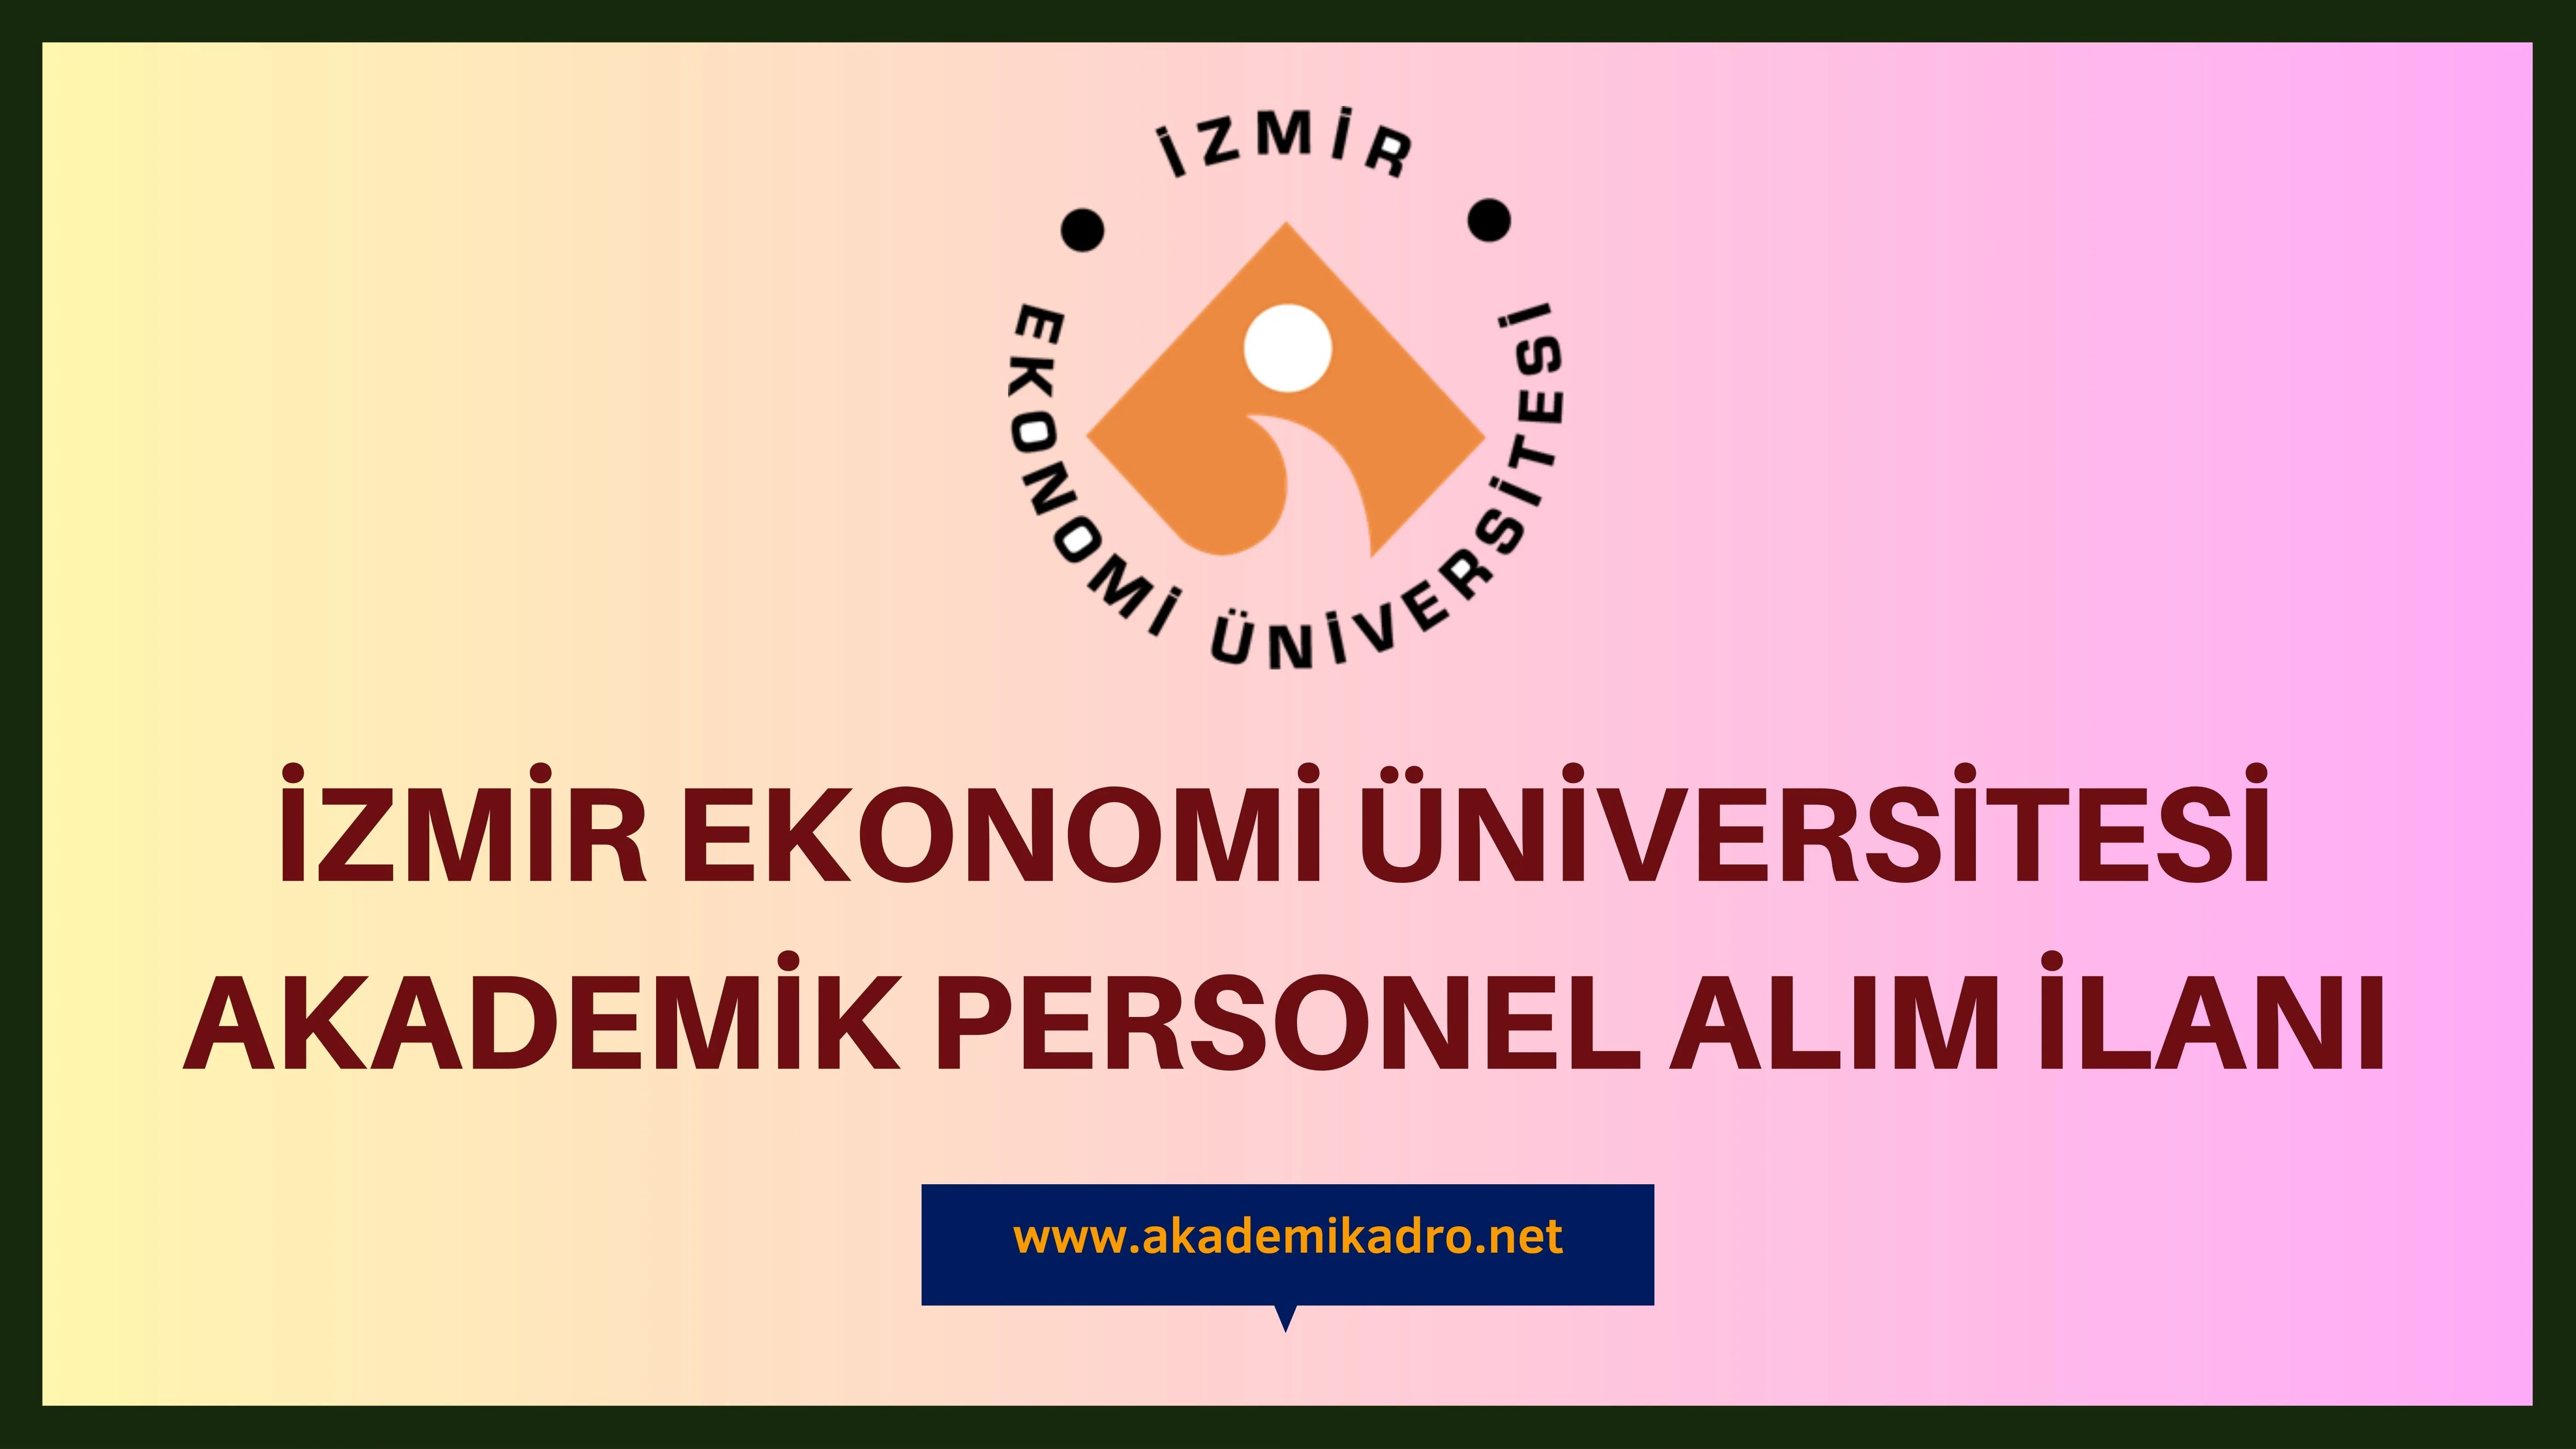 İzmir Ekonomi Üniversitesi birçok alandan 23 akademik personel alacak.